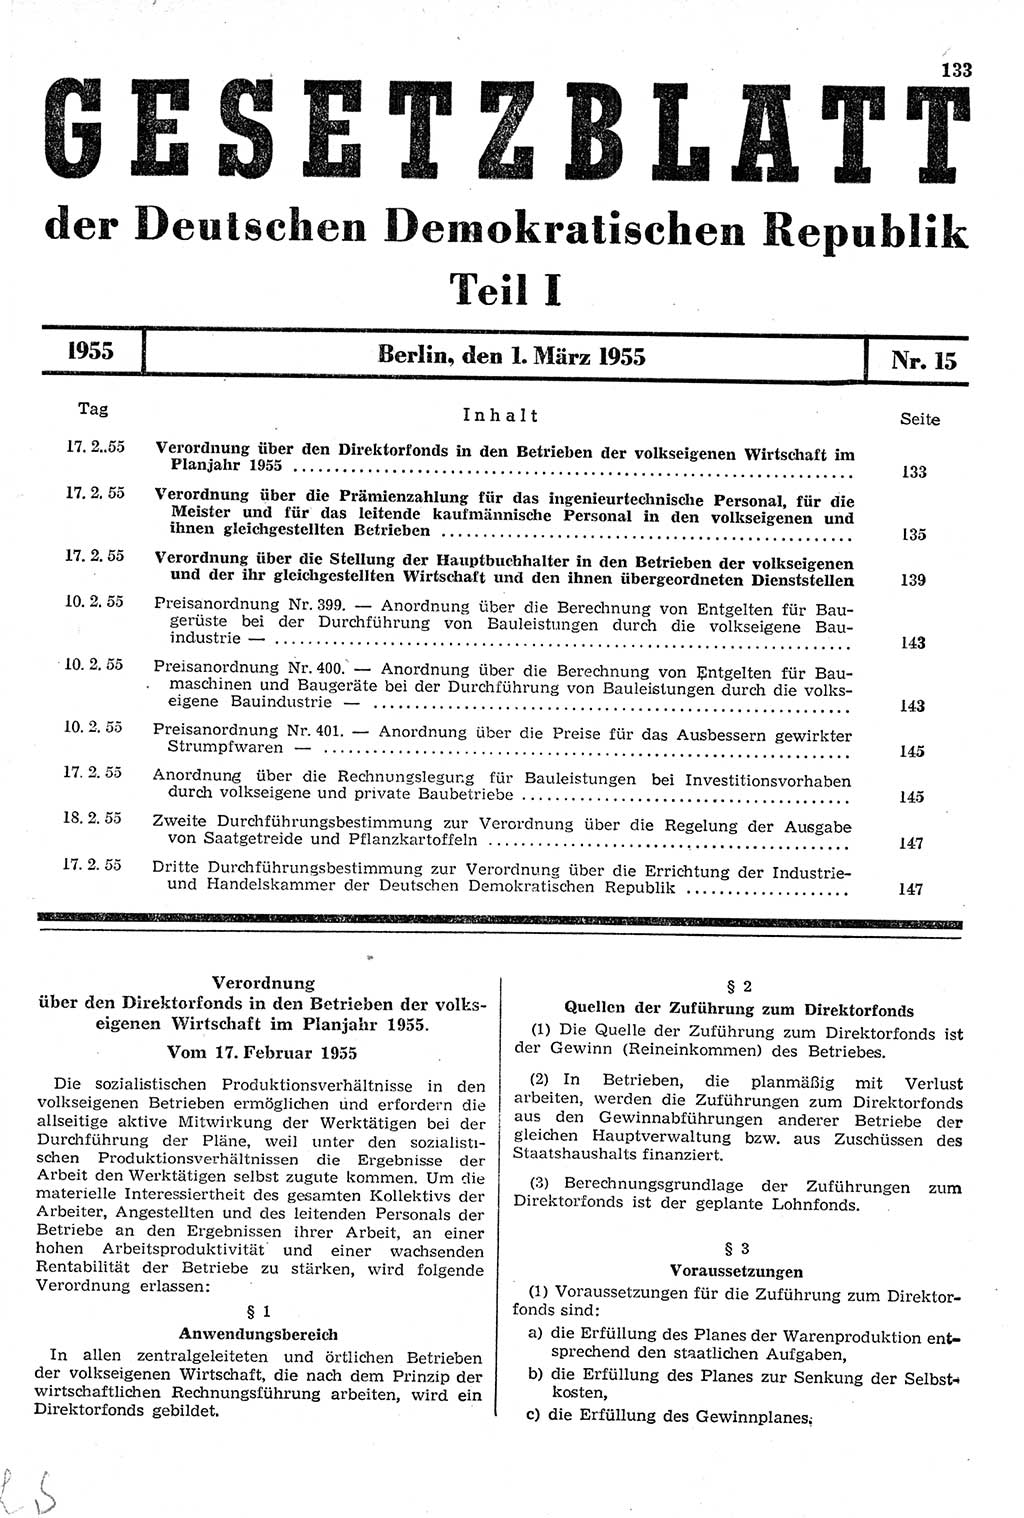 Gesetzblatt (GBl.) der Deutschen Demokratischen Republik (DDR) Teil Ⅰ 1955, Seite 133 (GBl. DDR Ⅰ 1955, S. 133)